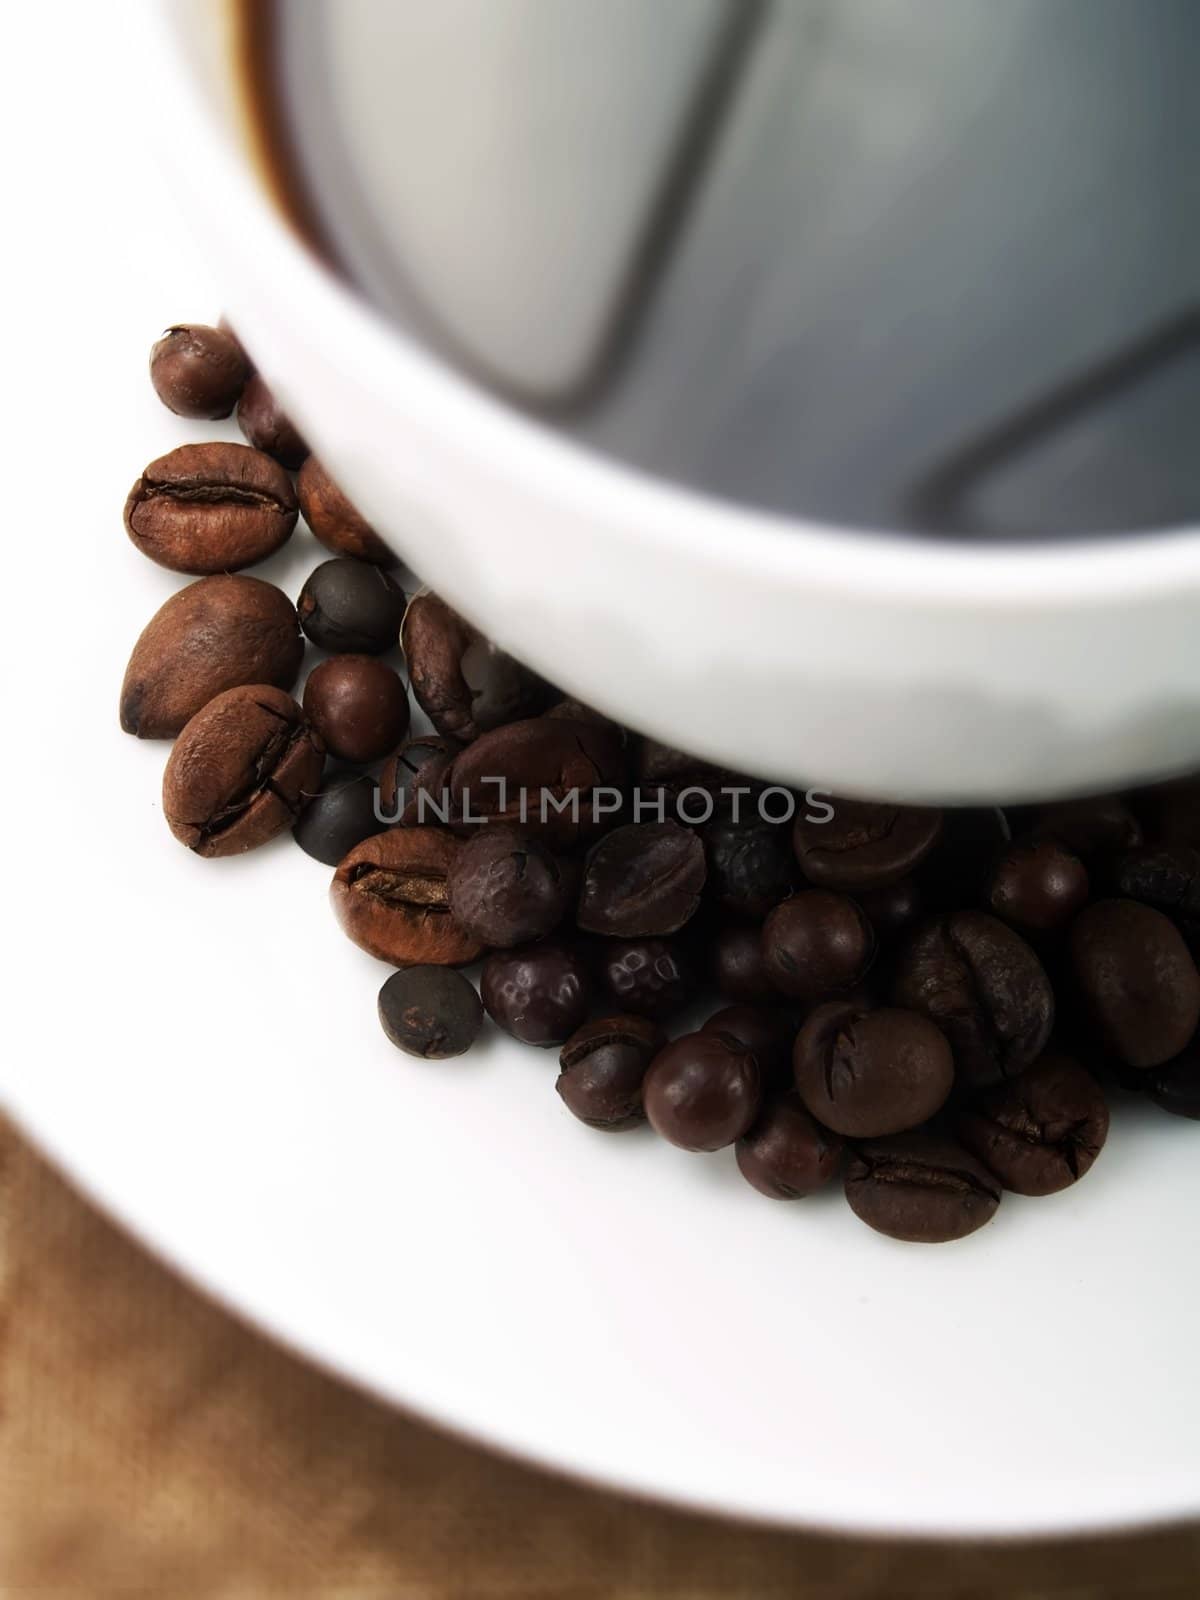 Coffee beans by henrischmit